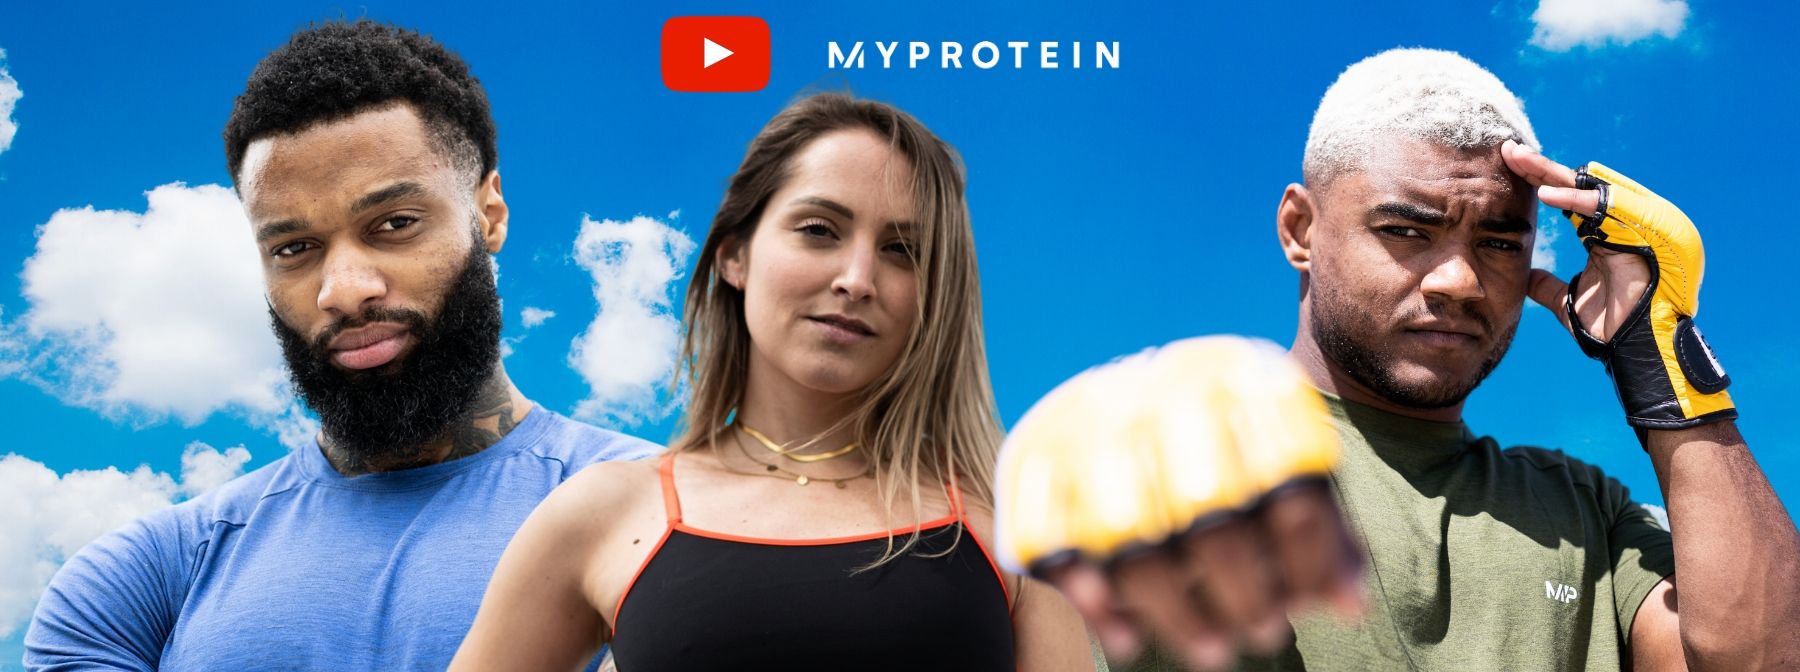 Découvrez notre chaîne YouTube : Myprotein France